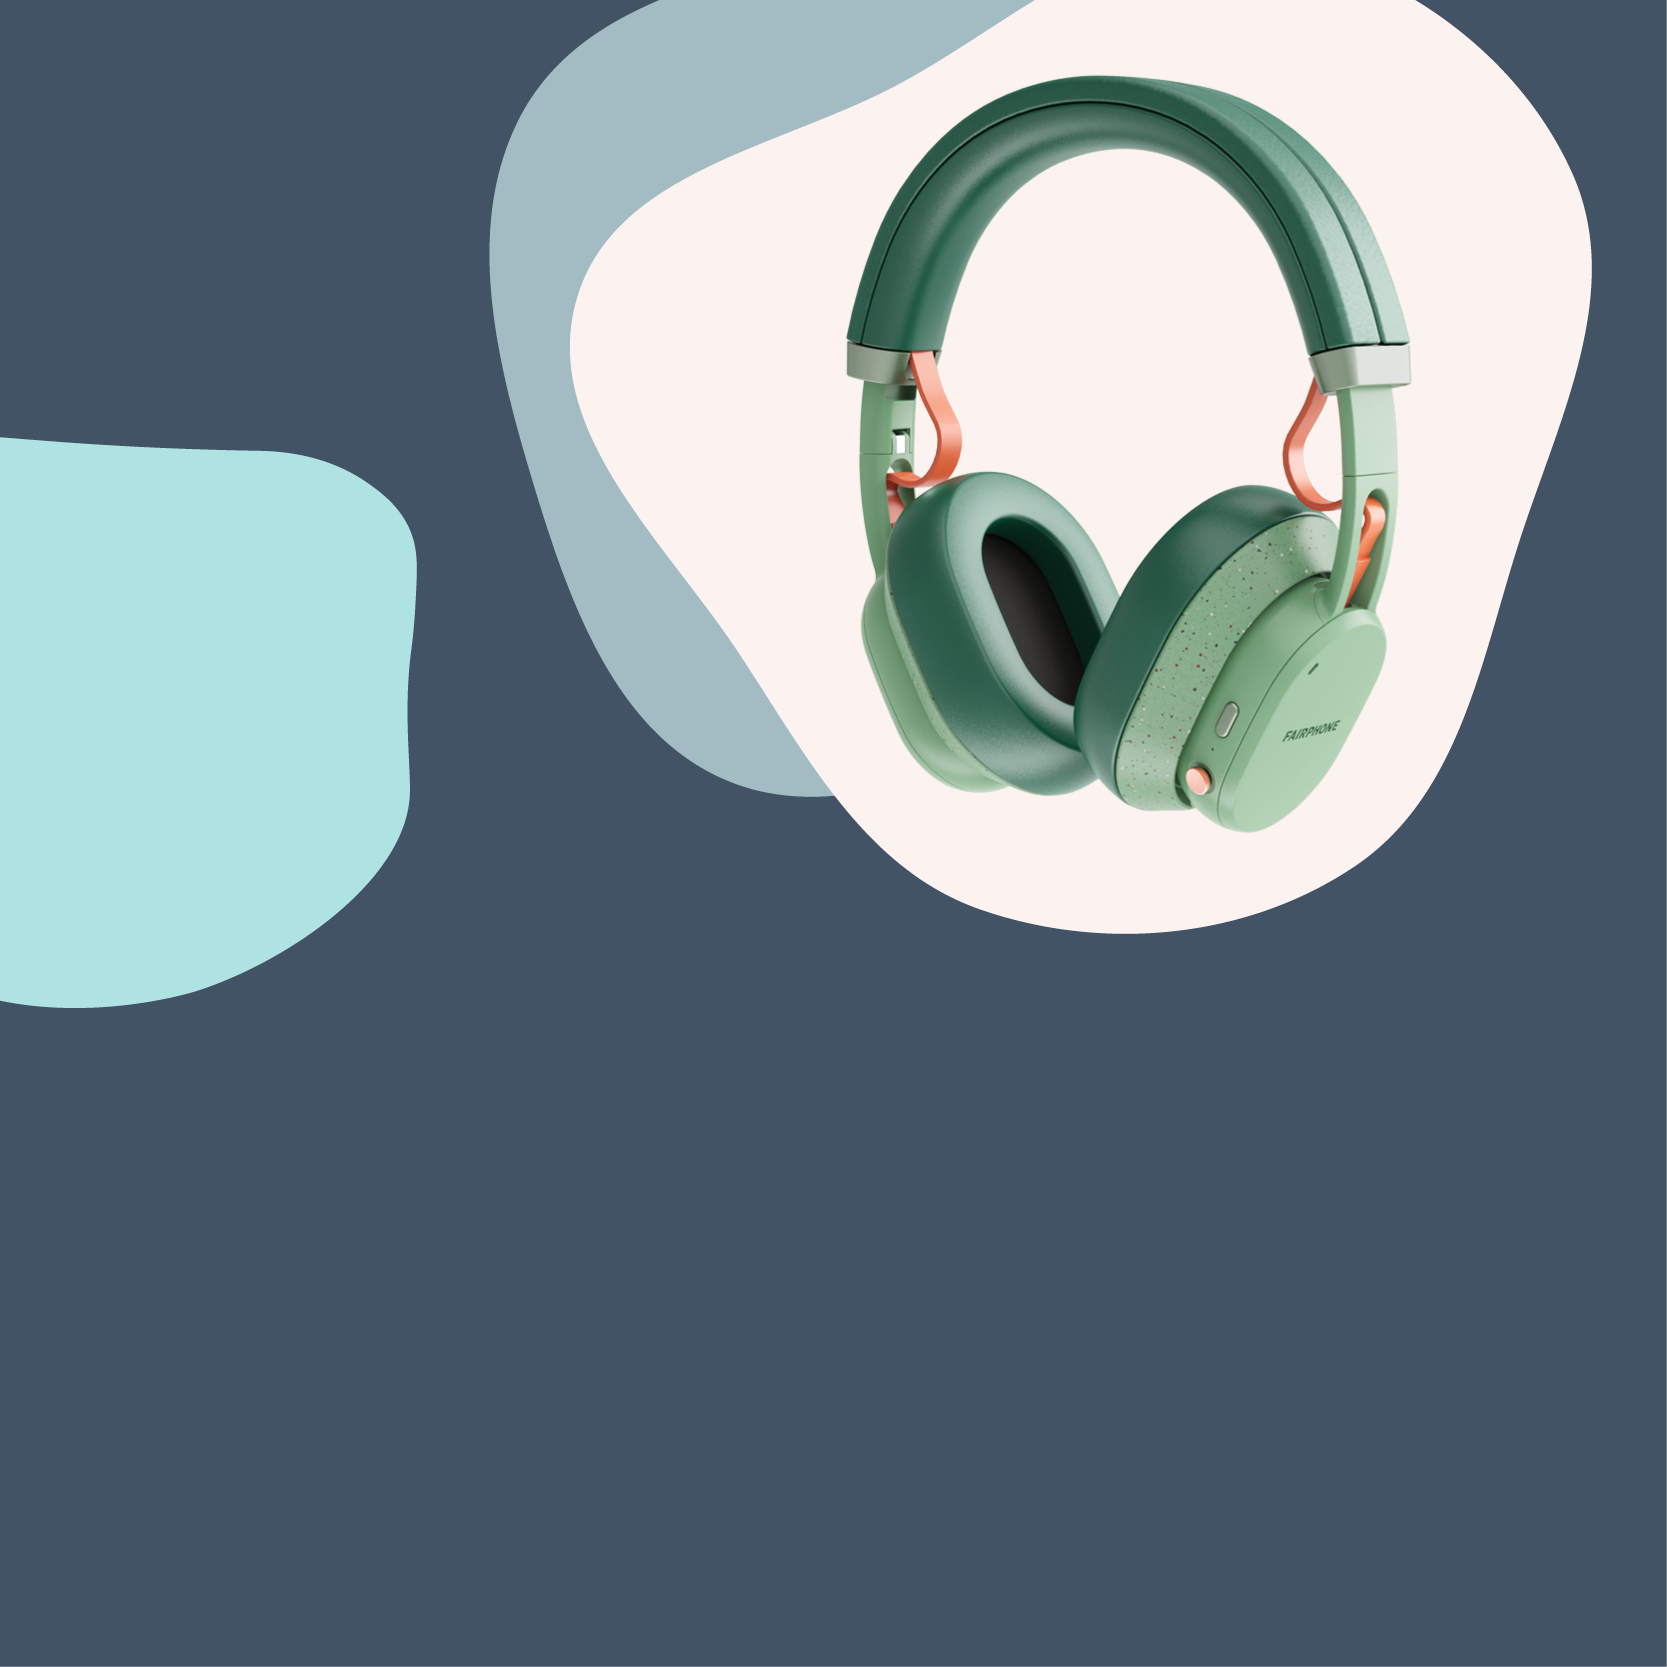 Fairbuds XL headphones in green